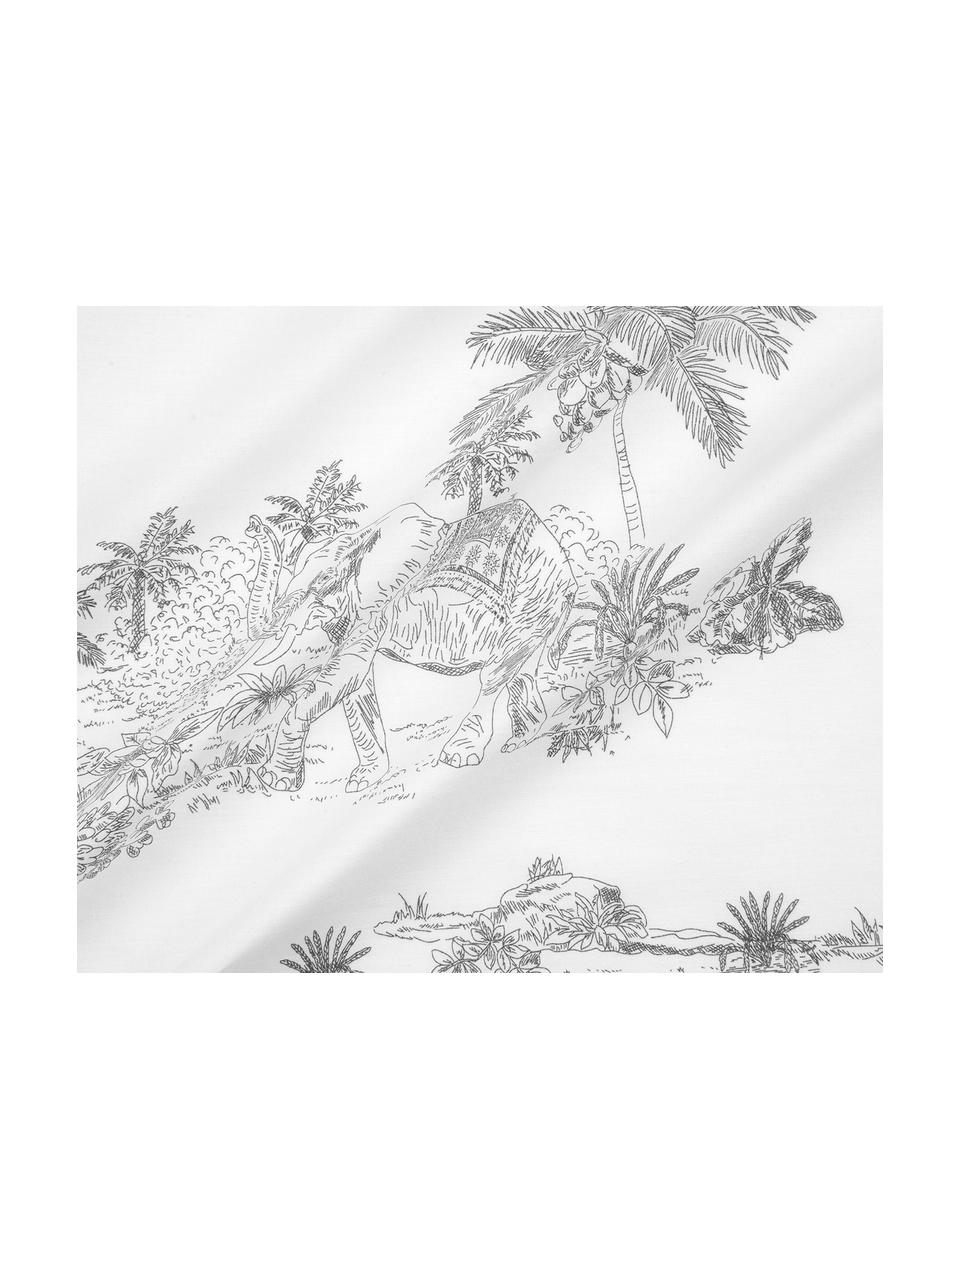 Baumwollperkal-Bettwäsche Bali mit gezeichneten Palmenmotiven, Webart: Perkal Fadendichte 180 TC, Weiss, Grau, 240 x 220 cm + 2 Kissen 80 x 80 cm